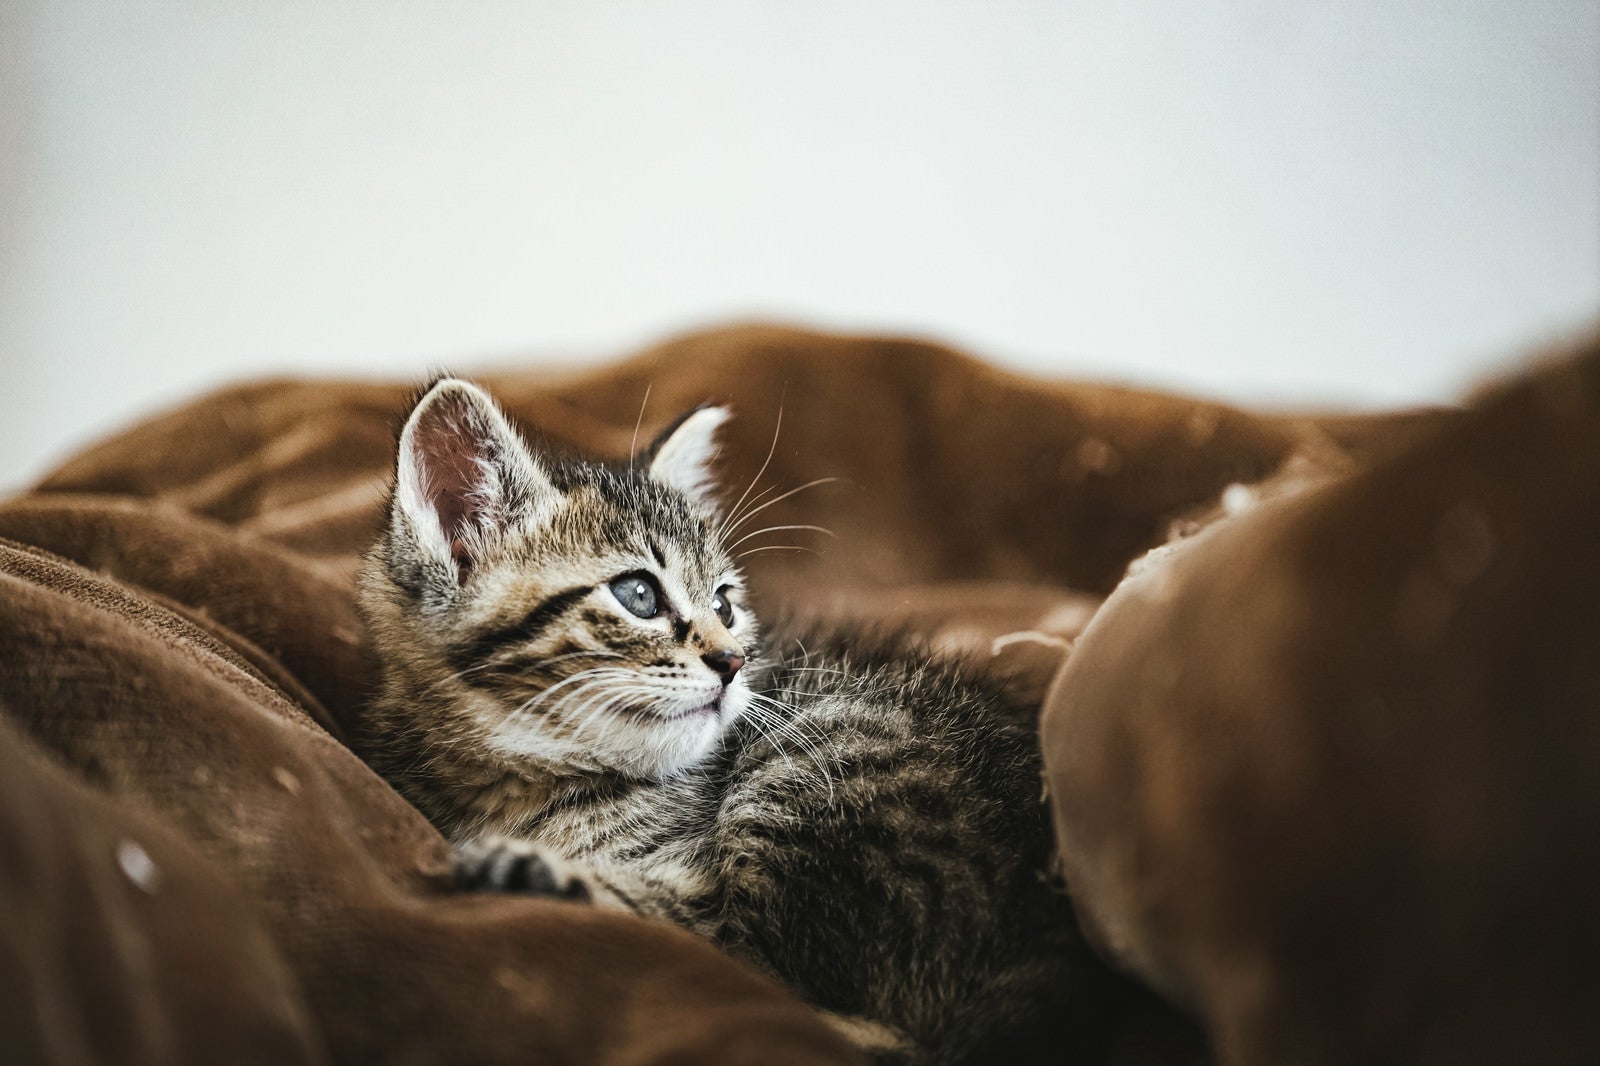 「起き上がる子猫」の写真